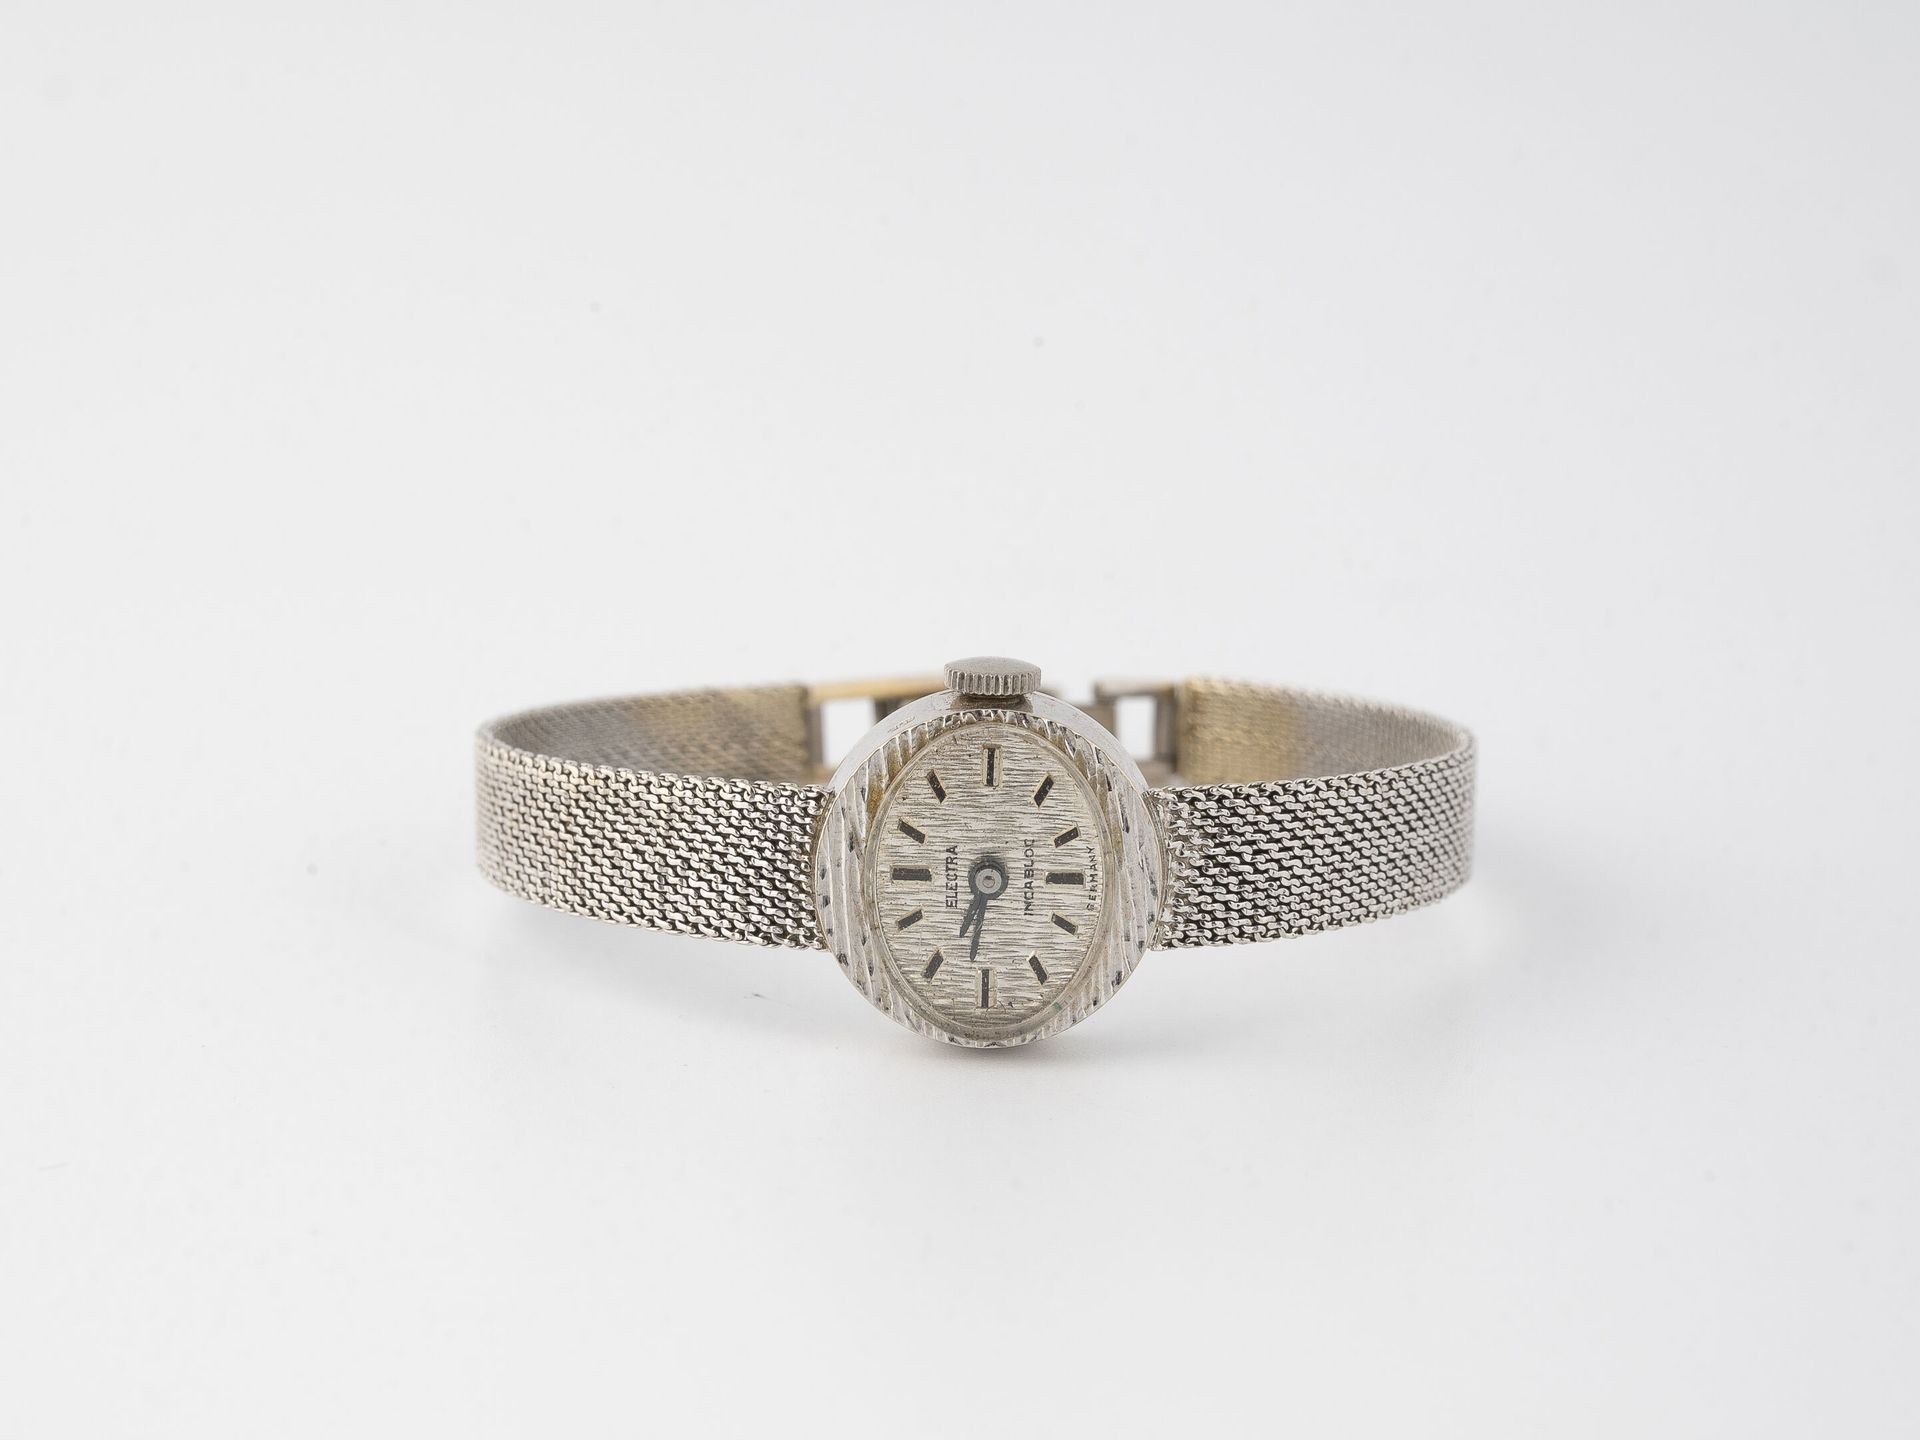 ELECTRA Pequeño reloj de pulsera de señora en oro blanco (750).

Caja ovalada.

&hellip;